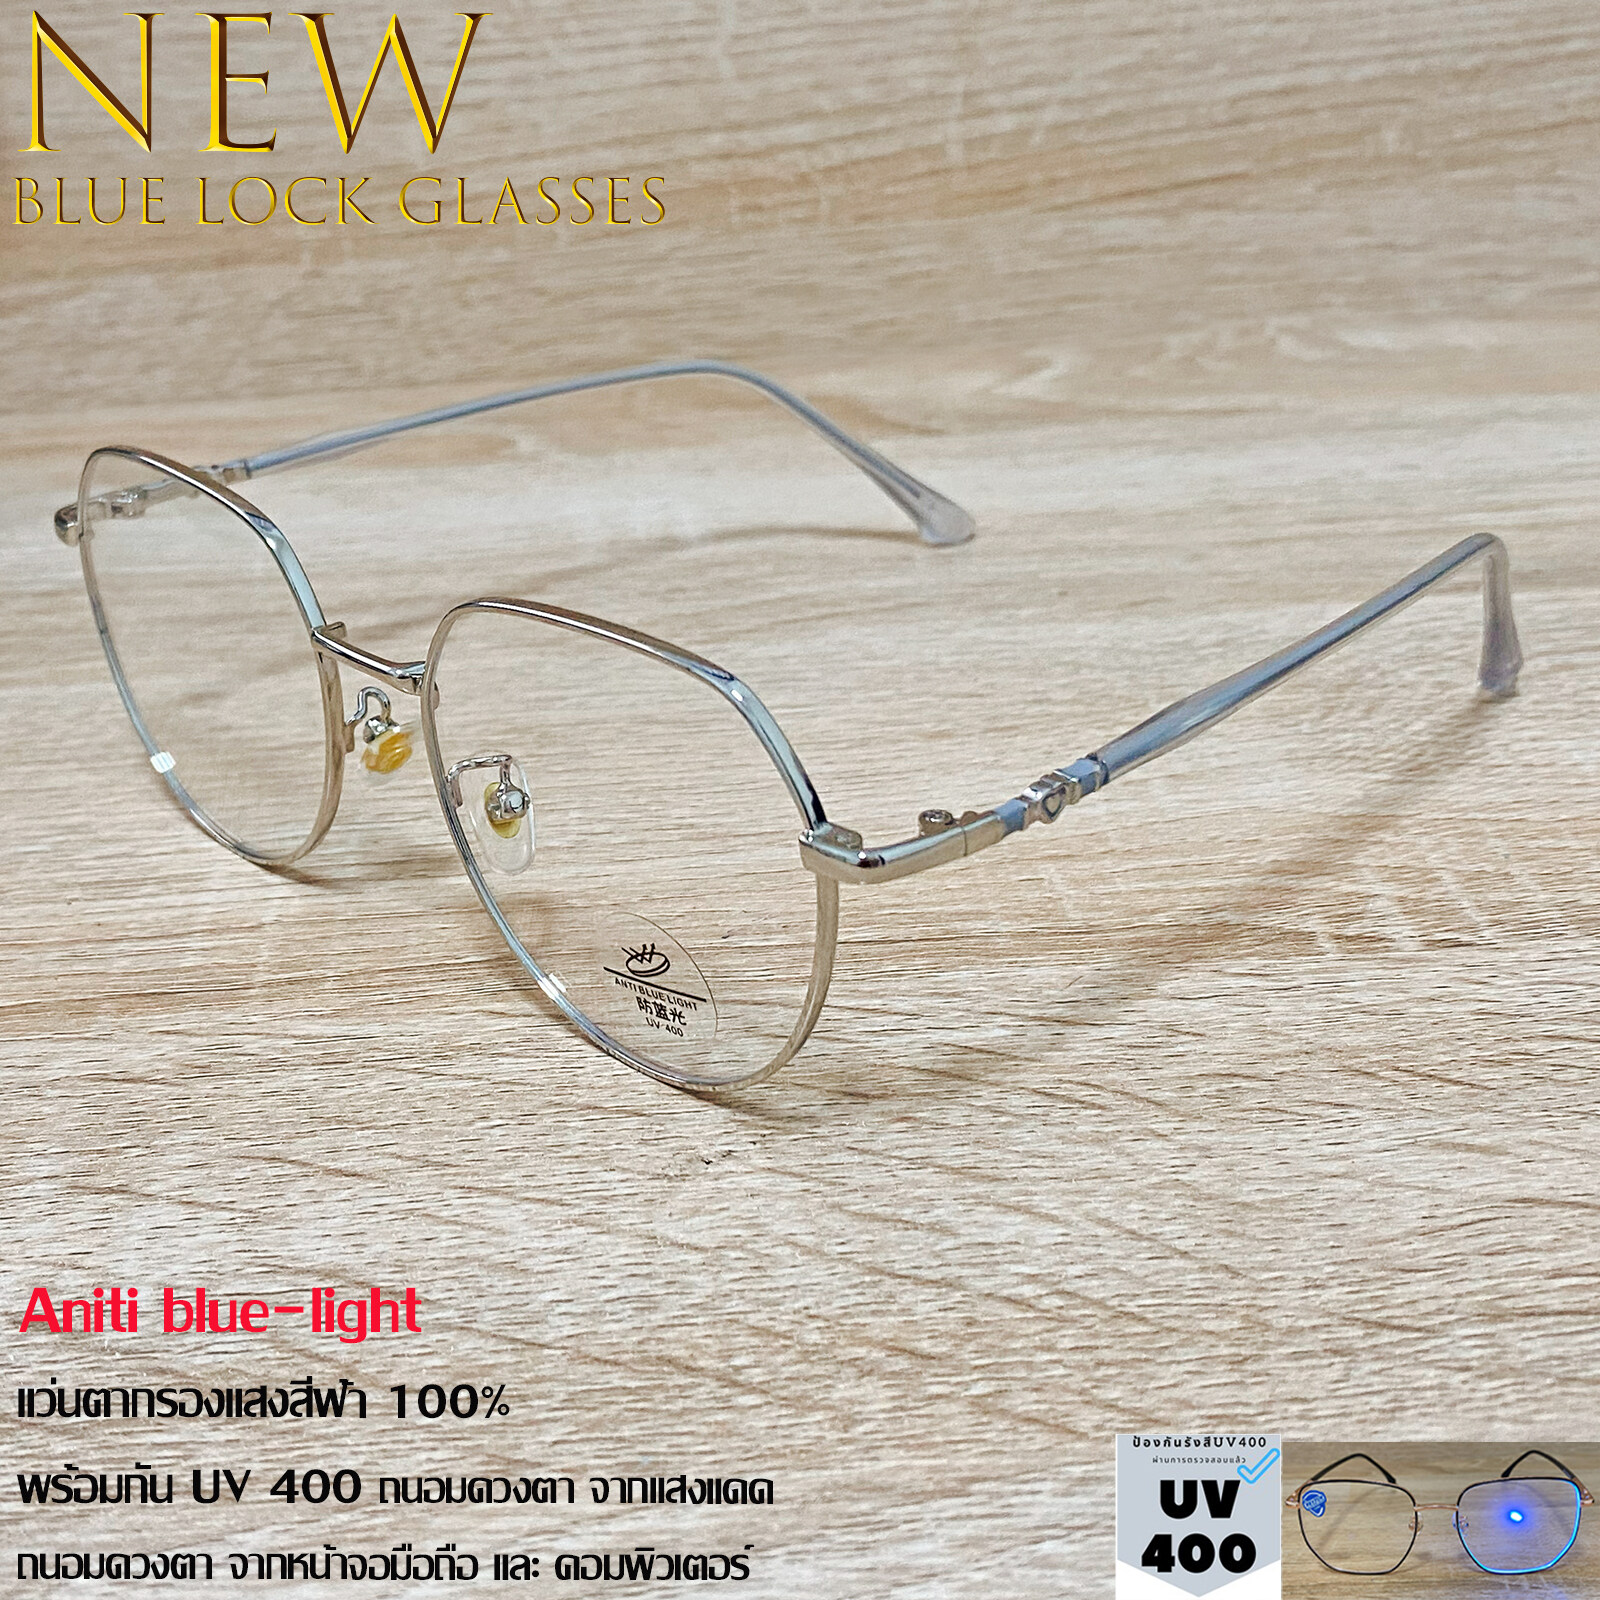 แว่นตา กรองแสงสีฟ้า บลูบล็อก Blue Block Aniti blue-light รุ่น 62070 สีเงิน ทรงสวย กันแดด UV400 ถนอมดวงตา ไทเทเนียม ขาข้อต่อ แฟชั่นเกาหลี